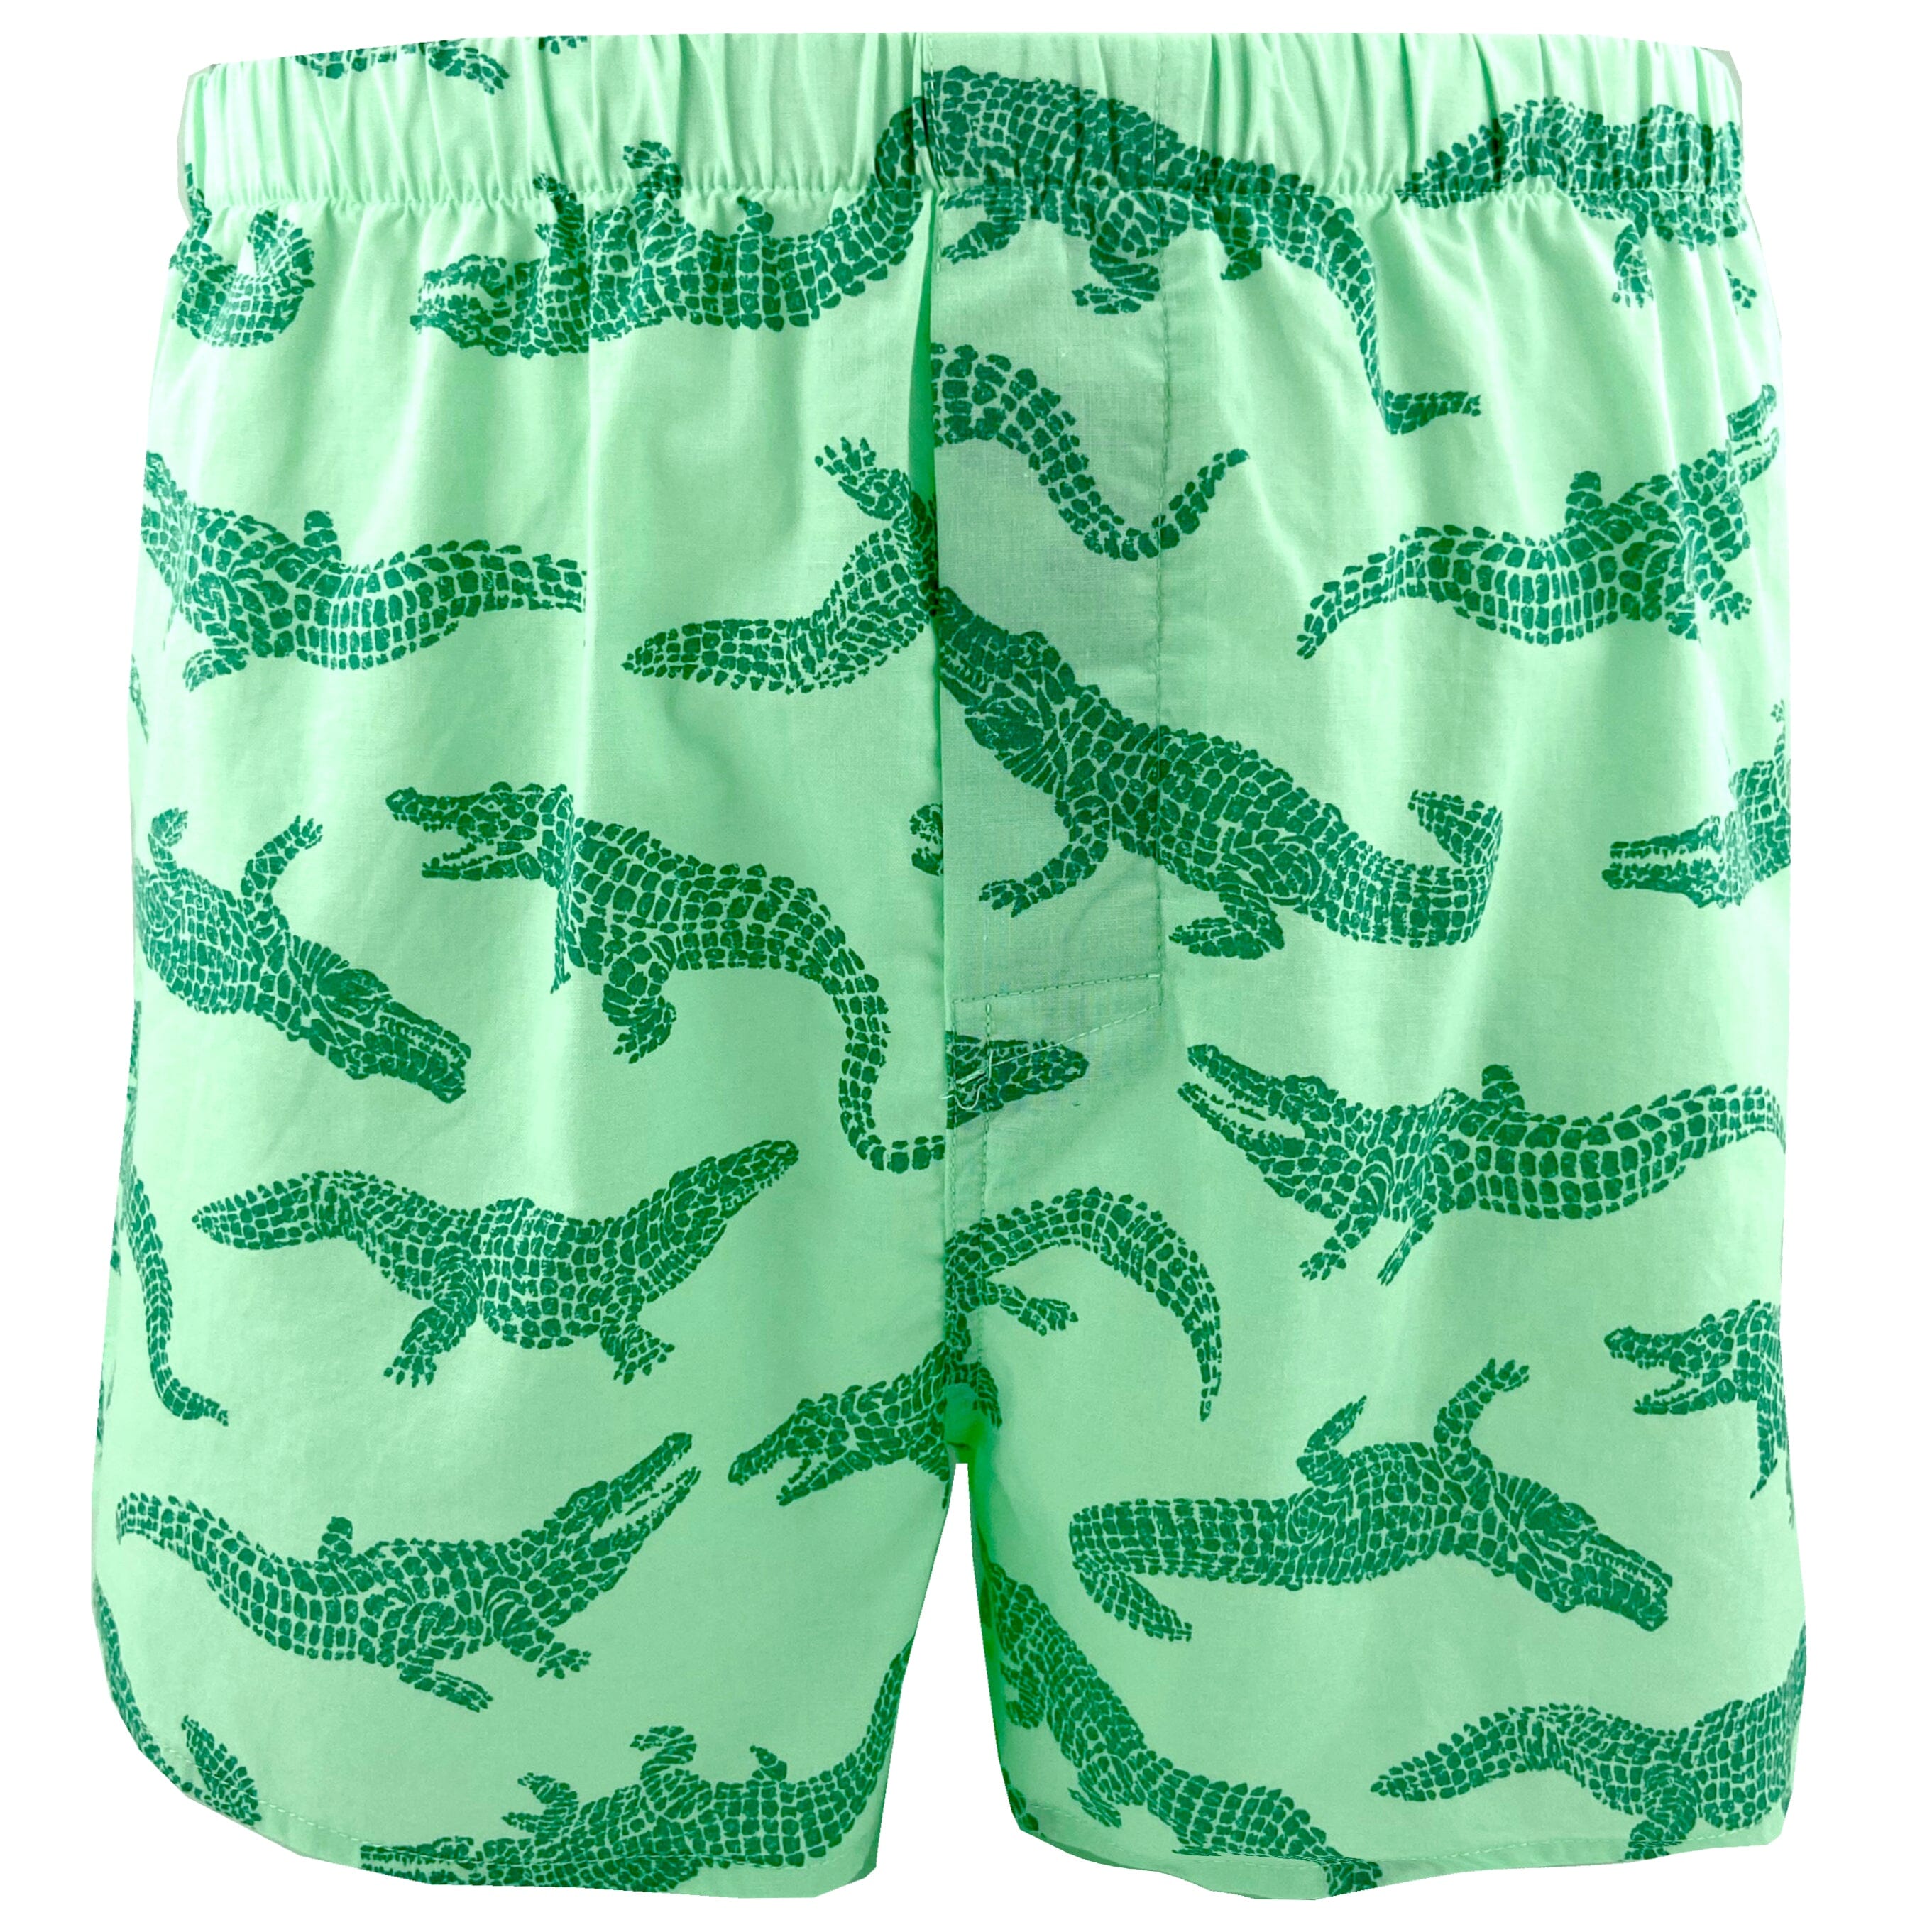 Men's Green Crocodile Alligator All Over Print Boxer Shorts UnderwearMen's Green Crocodile Alligator All Over Print Boxer Shorts Underwear